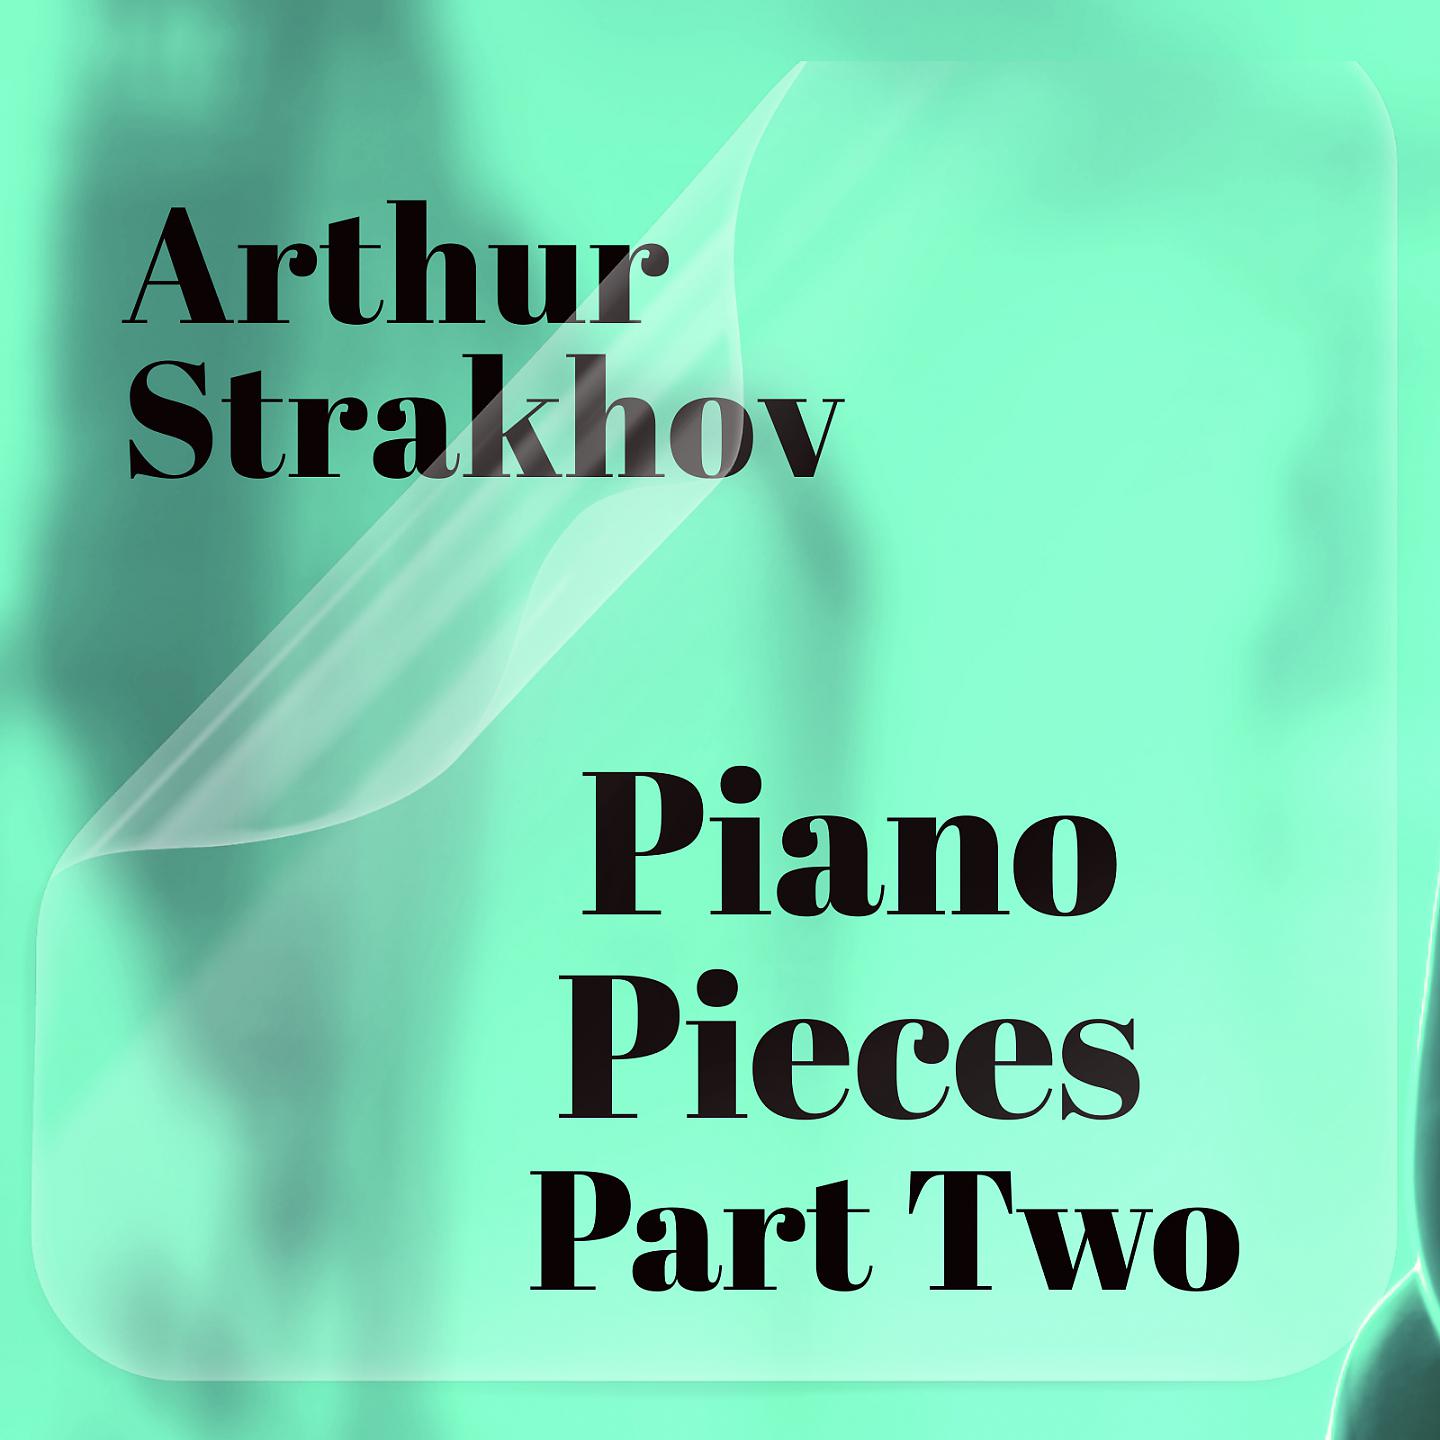 Arthur Strakhov - Prelude Two